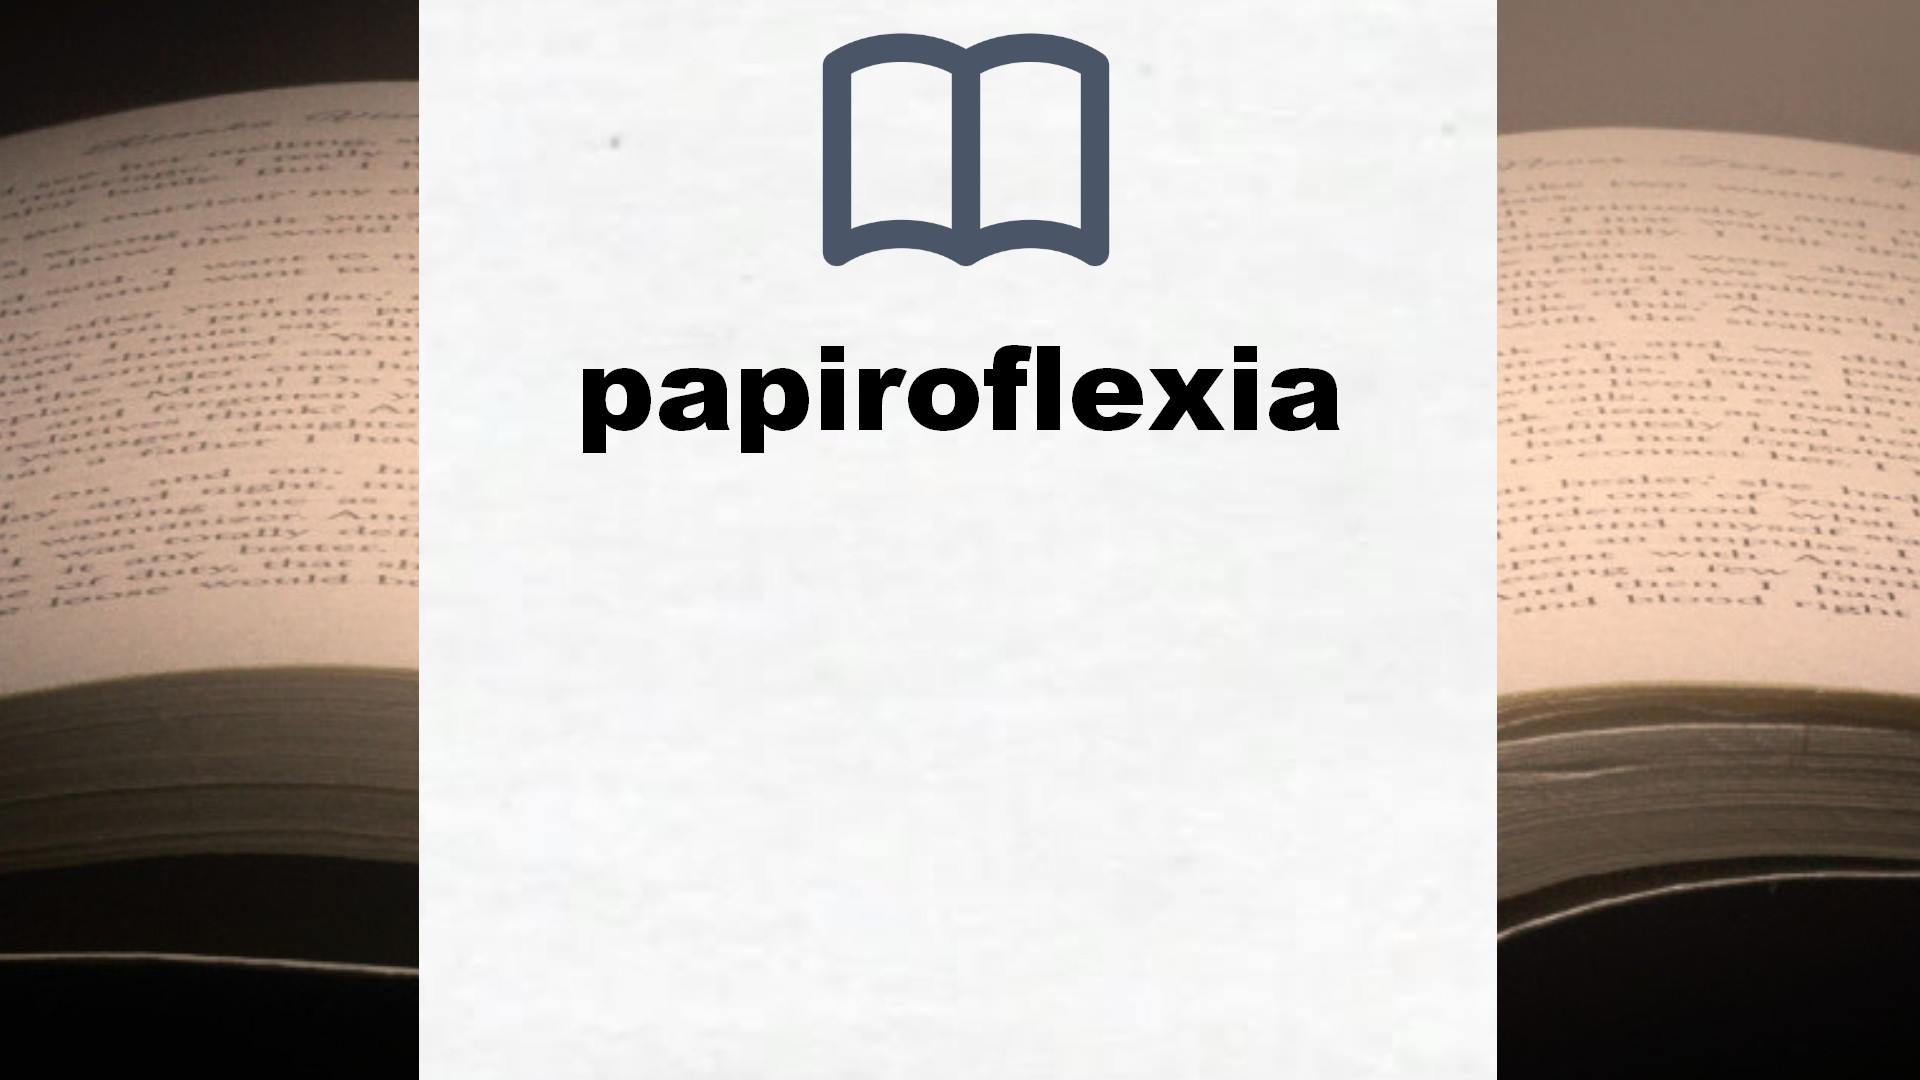 Libros sobre papiroflexia